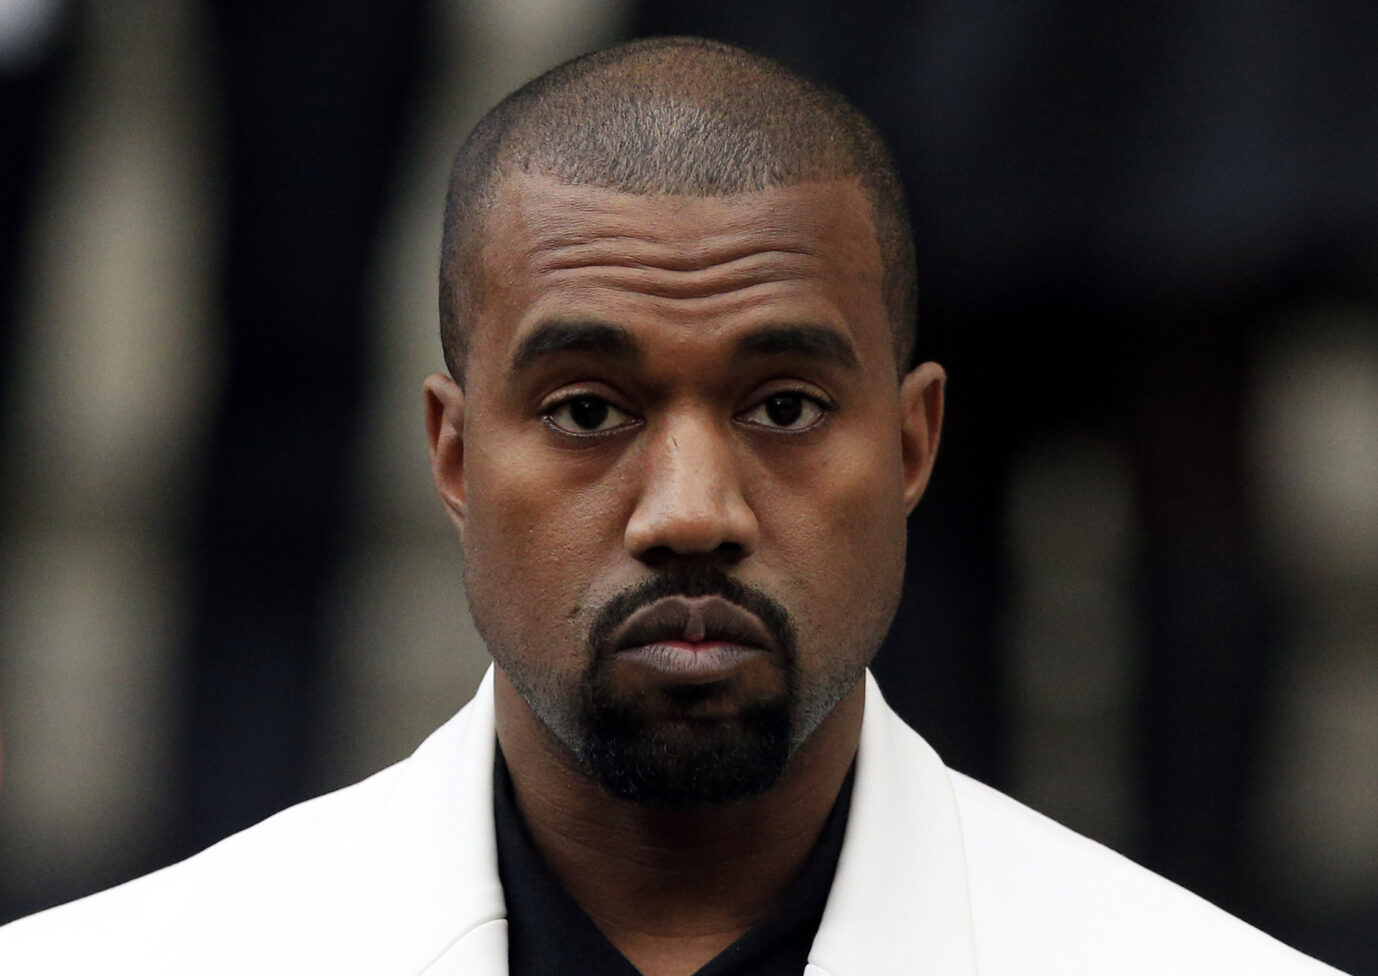 Der US-Rapper Kanye West trägt ein weißes Jackett und schaut frontal in die Kamera.